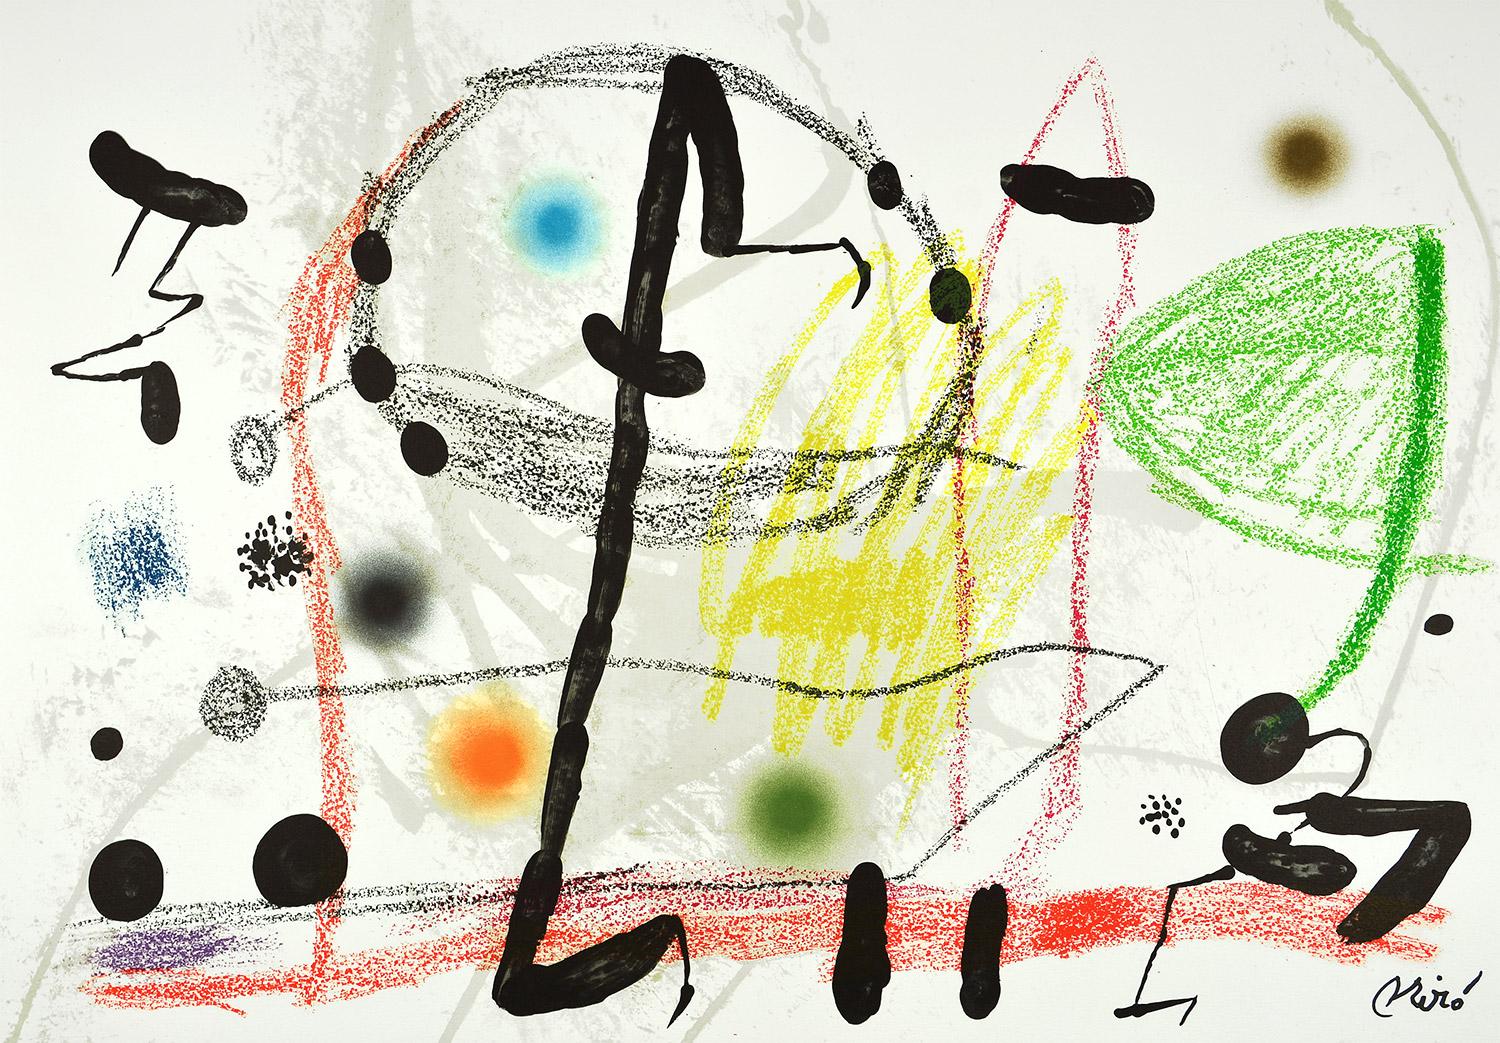 Joan Miró - Maravillas con variaciones acrósticas en el jardín de Miró XIII
Datum der Gründung: 1975
Medium: Lithographie auf Gvarro-Papier
Auflage: 1500
Größe: 49,5 x 71 cm
Zustand: In sehr gutem Zustand und nie gerahmt
Beobachtungen:
Lithographie